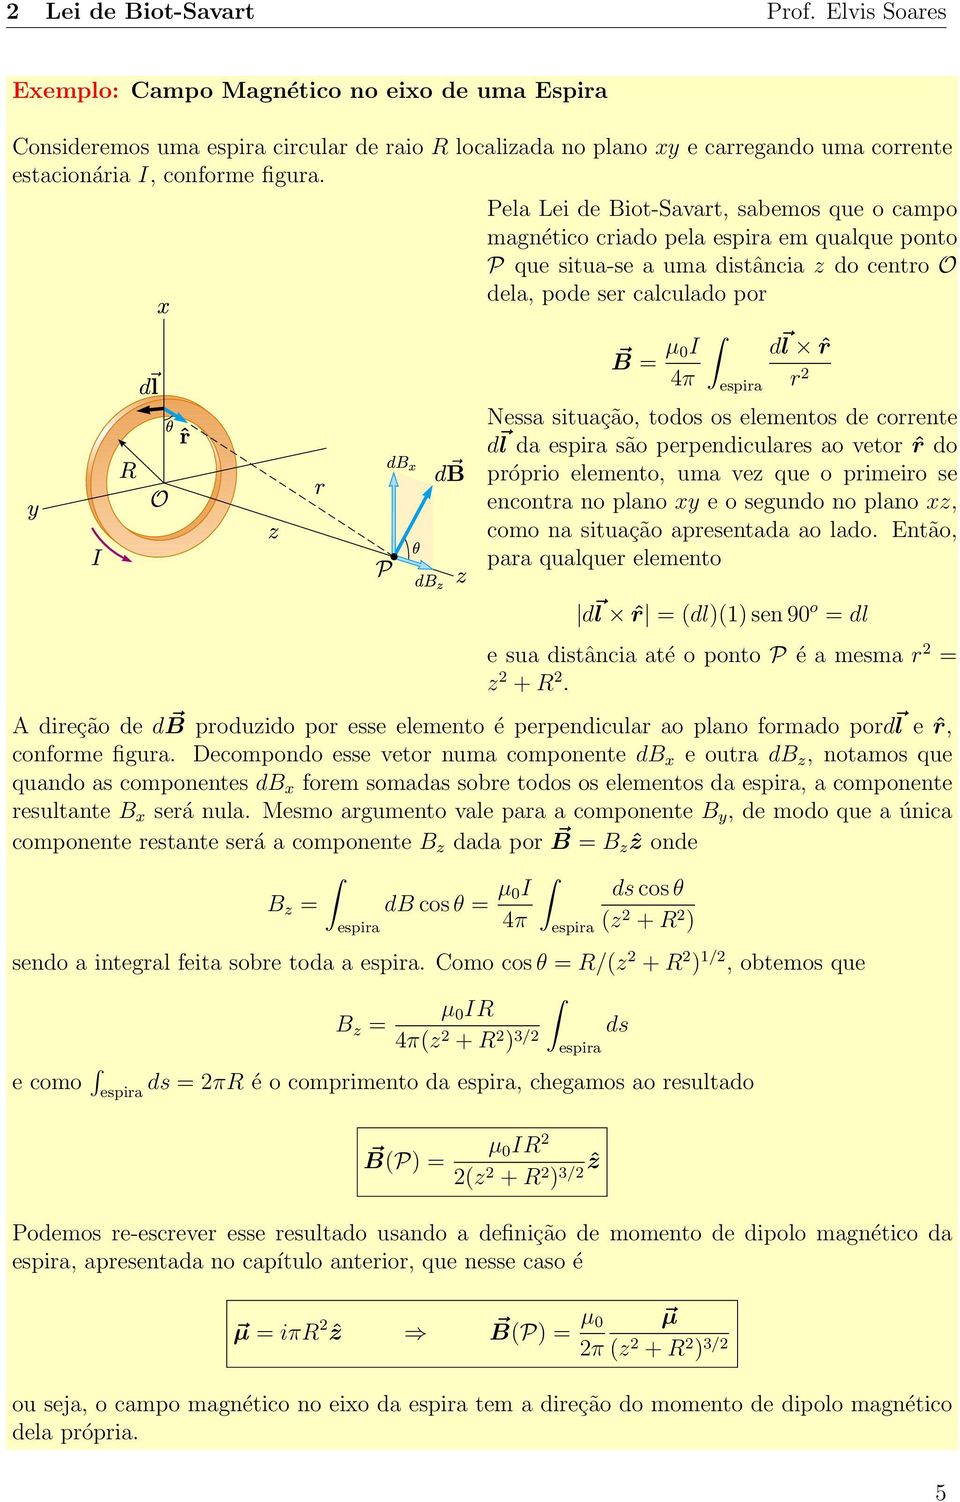 Pela Lei de Biot-Savart, sabemos que o campo magnético criado pela espira em qualque ponto P que situa-se a uma distância z do centro O dela, pode ser calculado por B = µ 0I 4π espira d l ˆr r 2